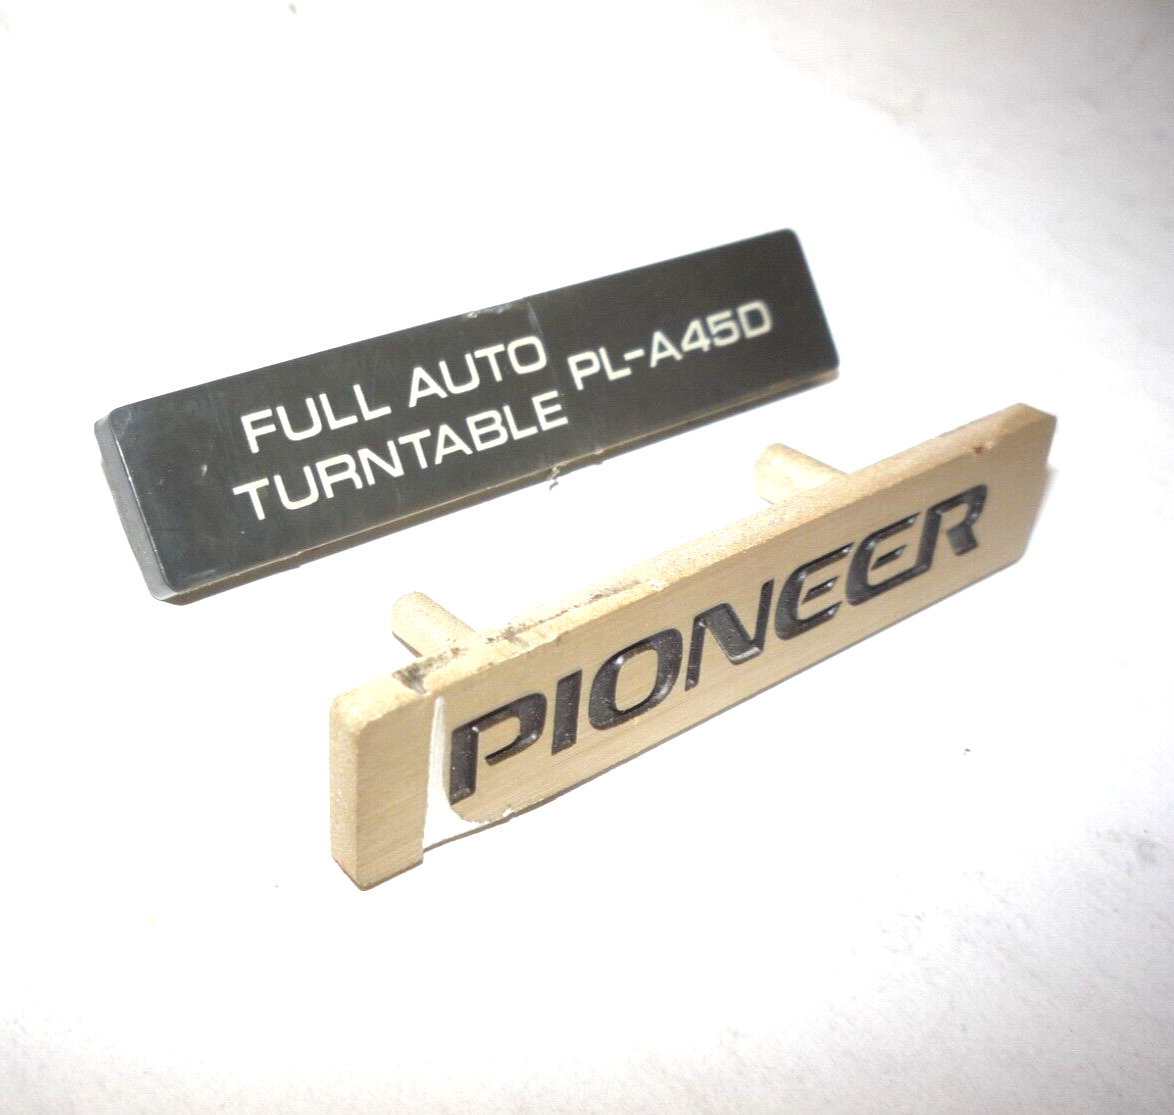 2 Pioneer PL-A45D Turntable OEM • Logo Badge • Vintage Hifi Genuine Part